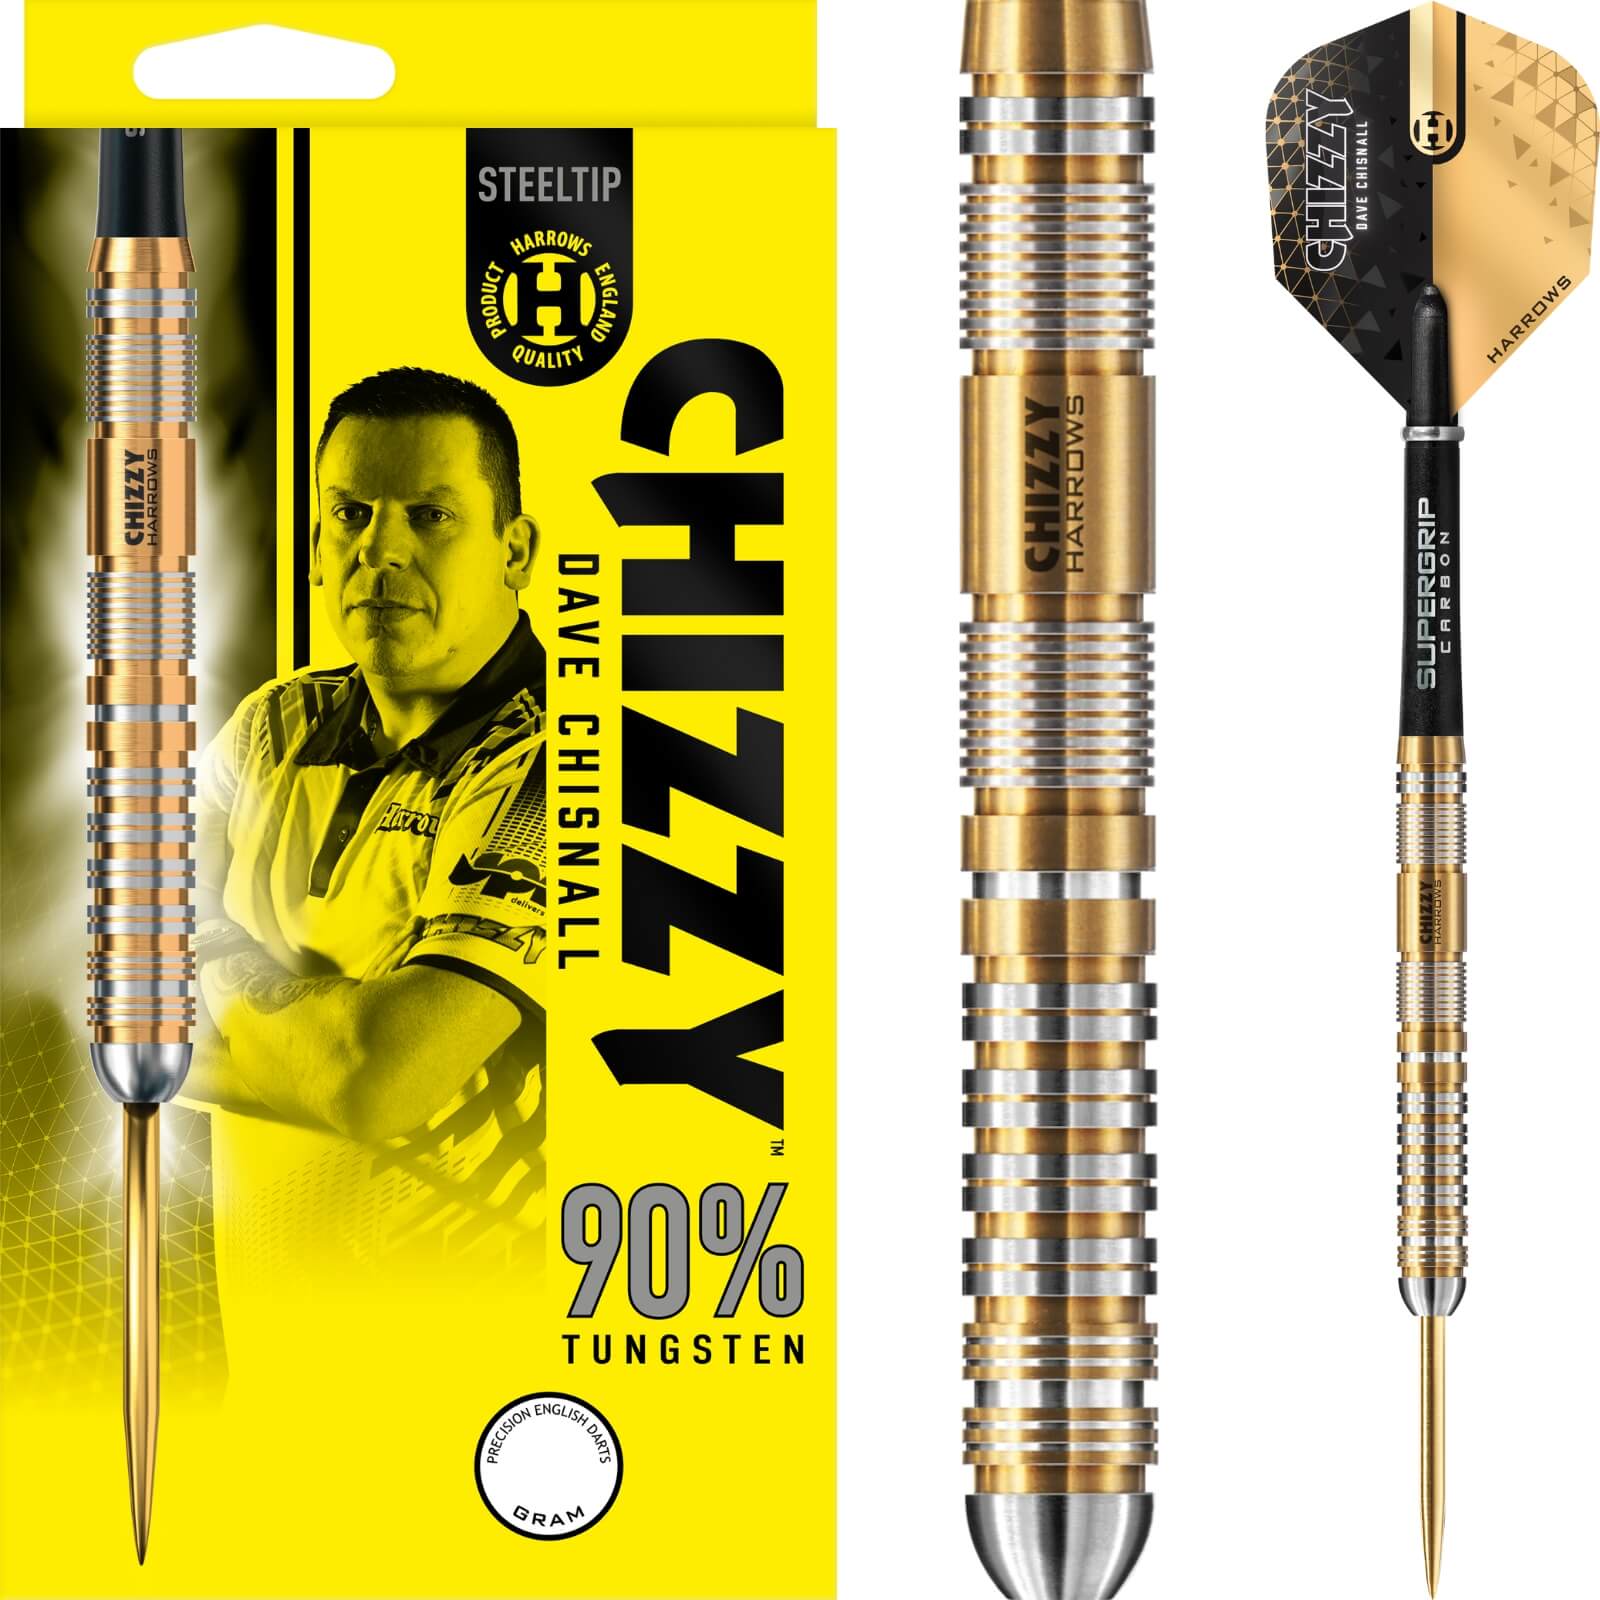 Darts - Harrows - Chizzy Series 2 Darts - Steel Tip - 90% Tungsten - 21g 22g 23g 24g 25g 26g 